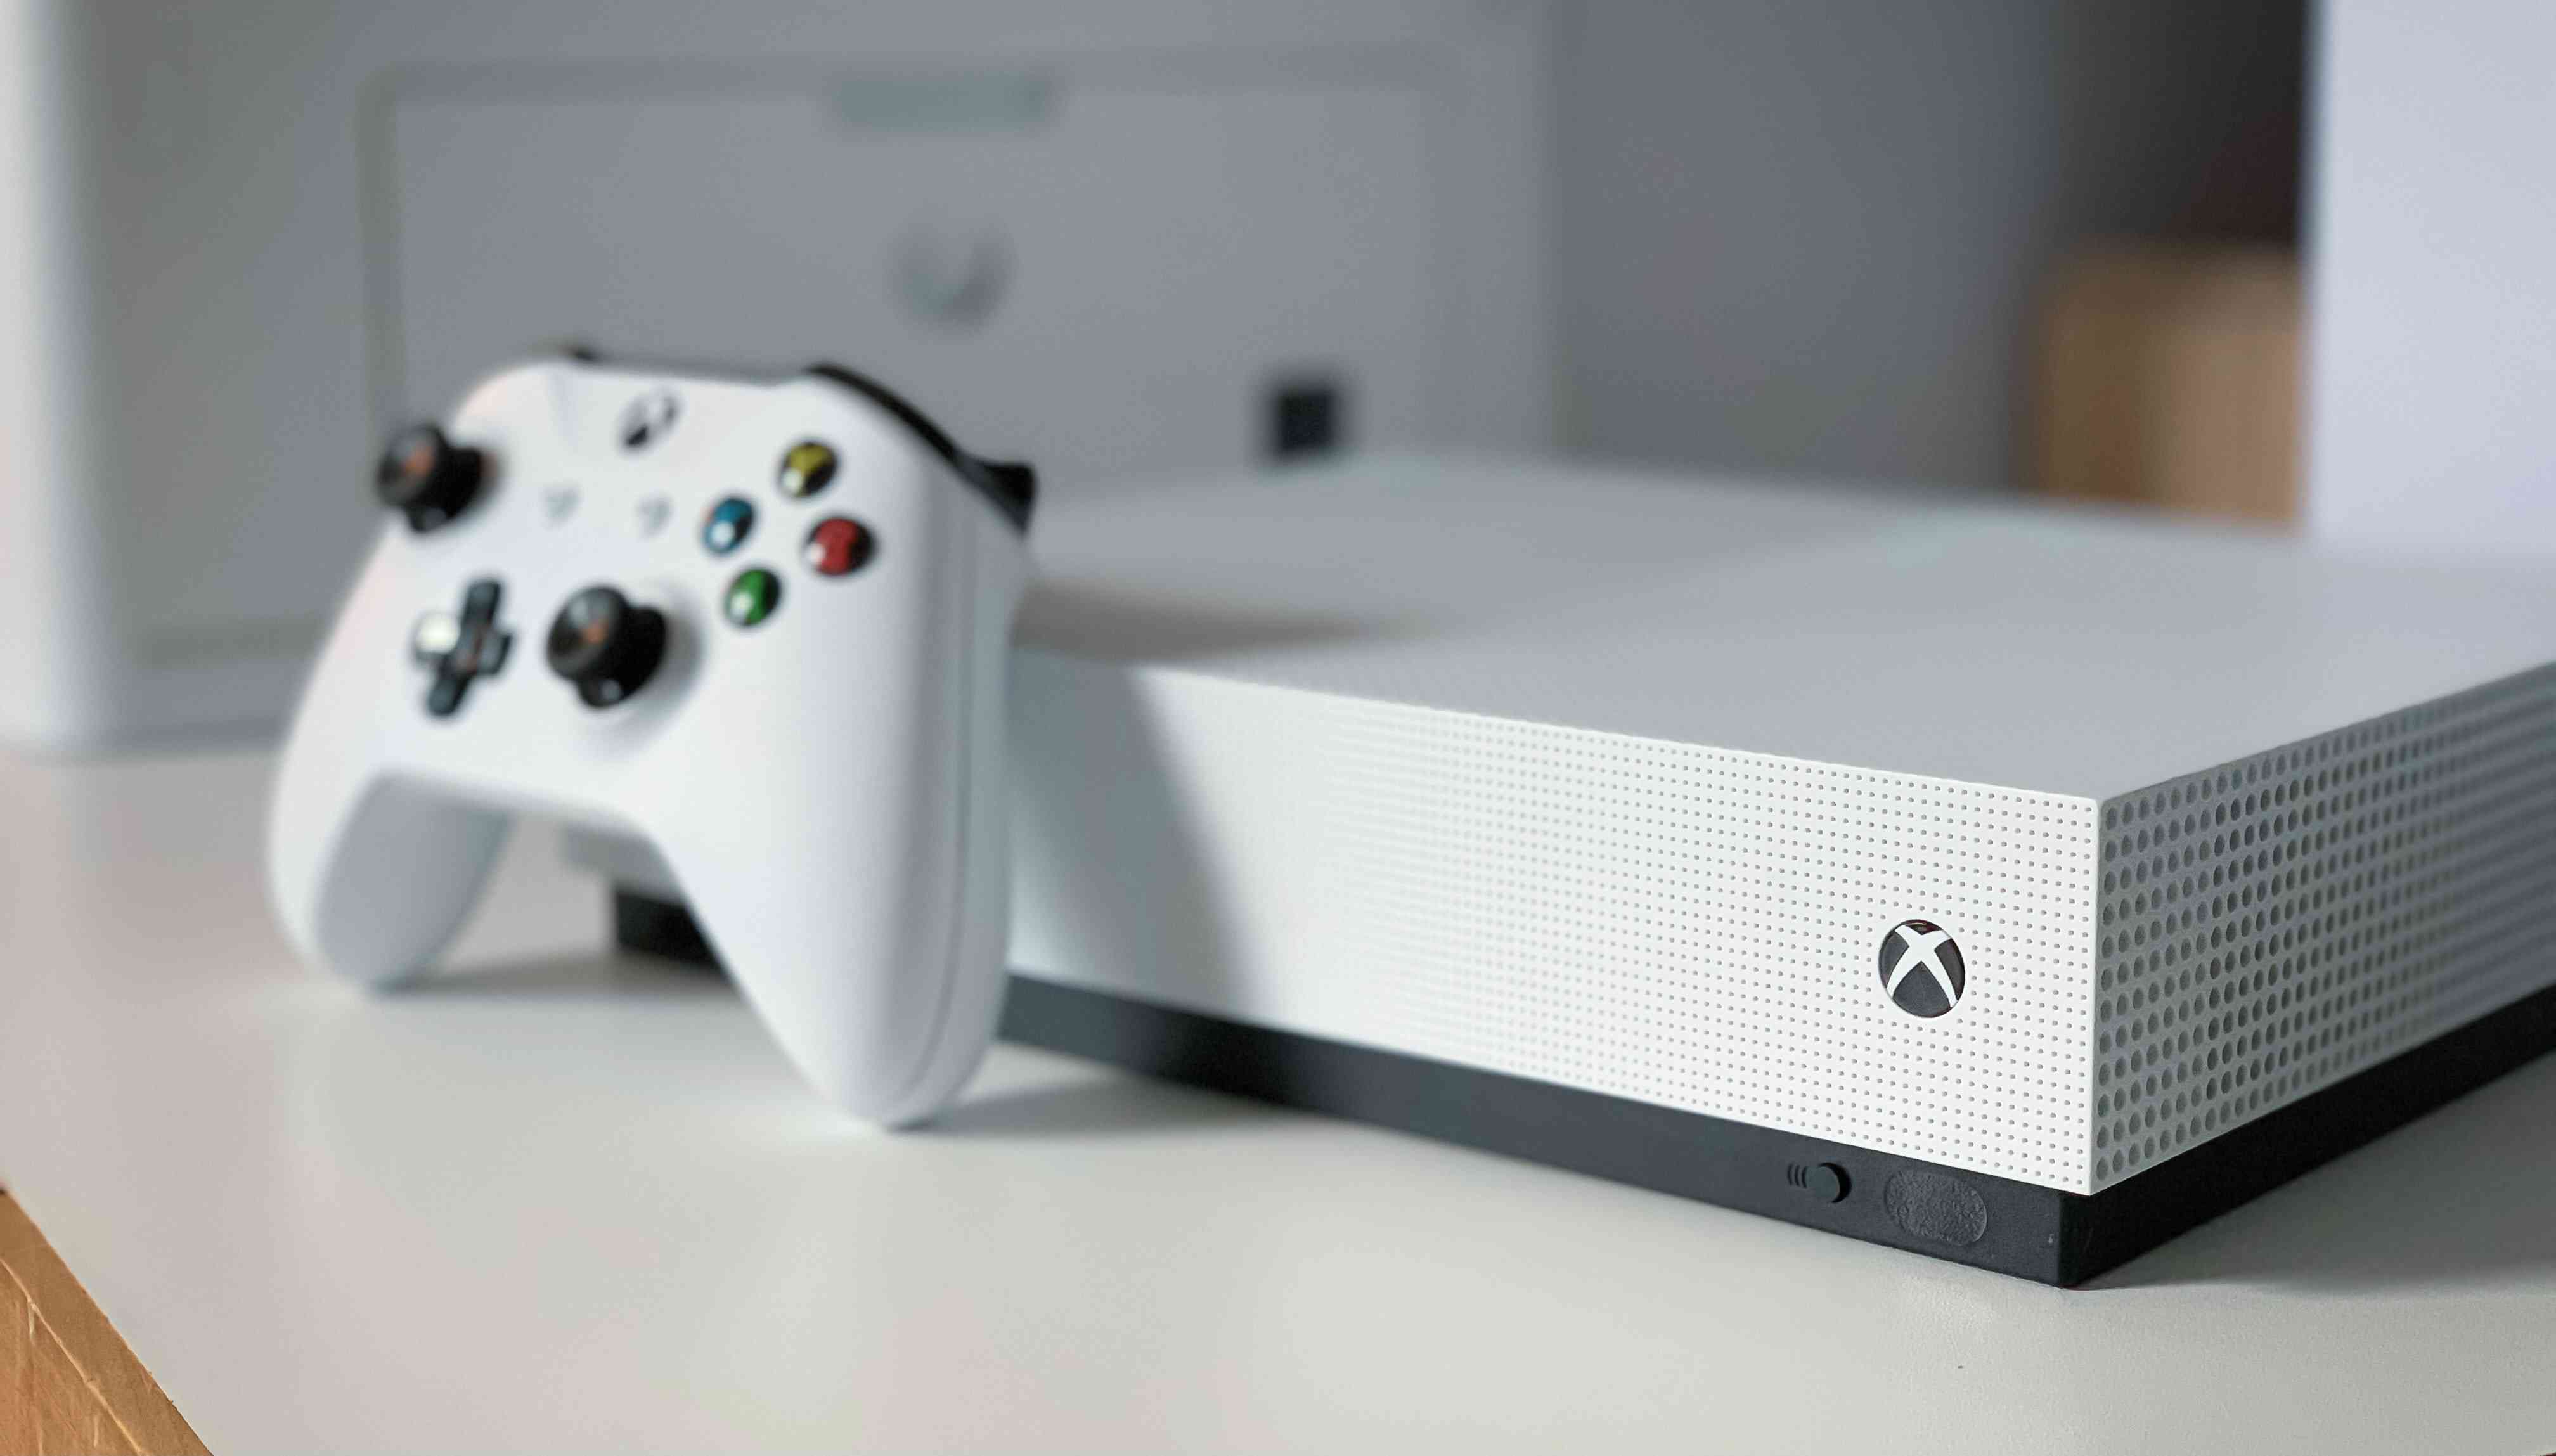 Witte Xbox One-console met een witte controller ertegenaan geleund.